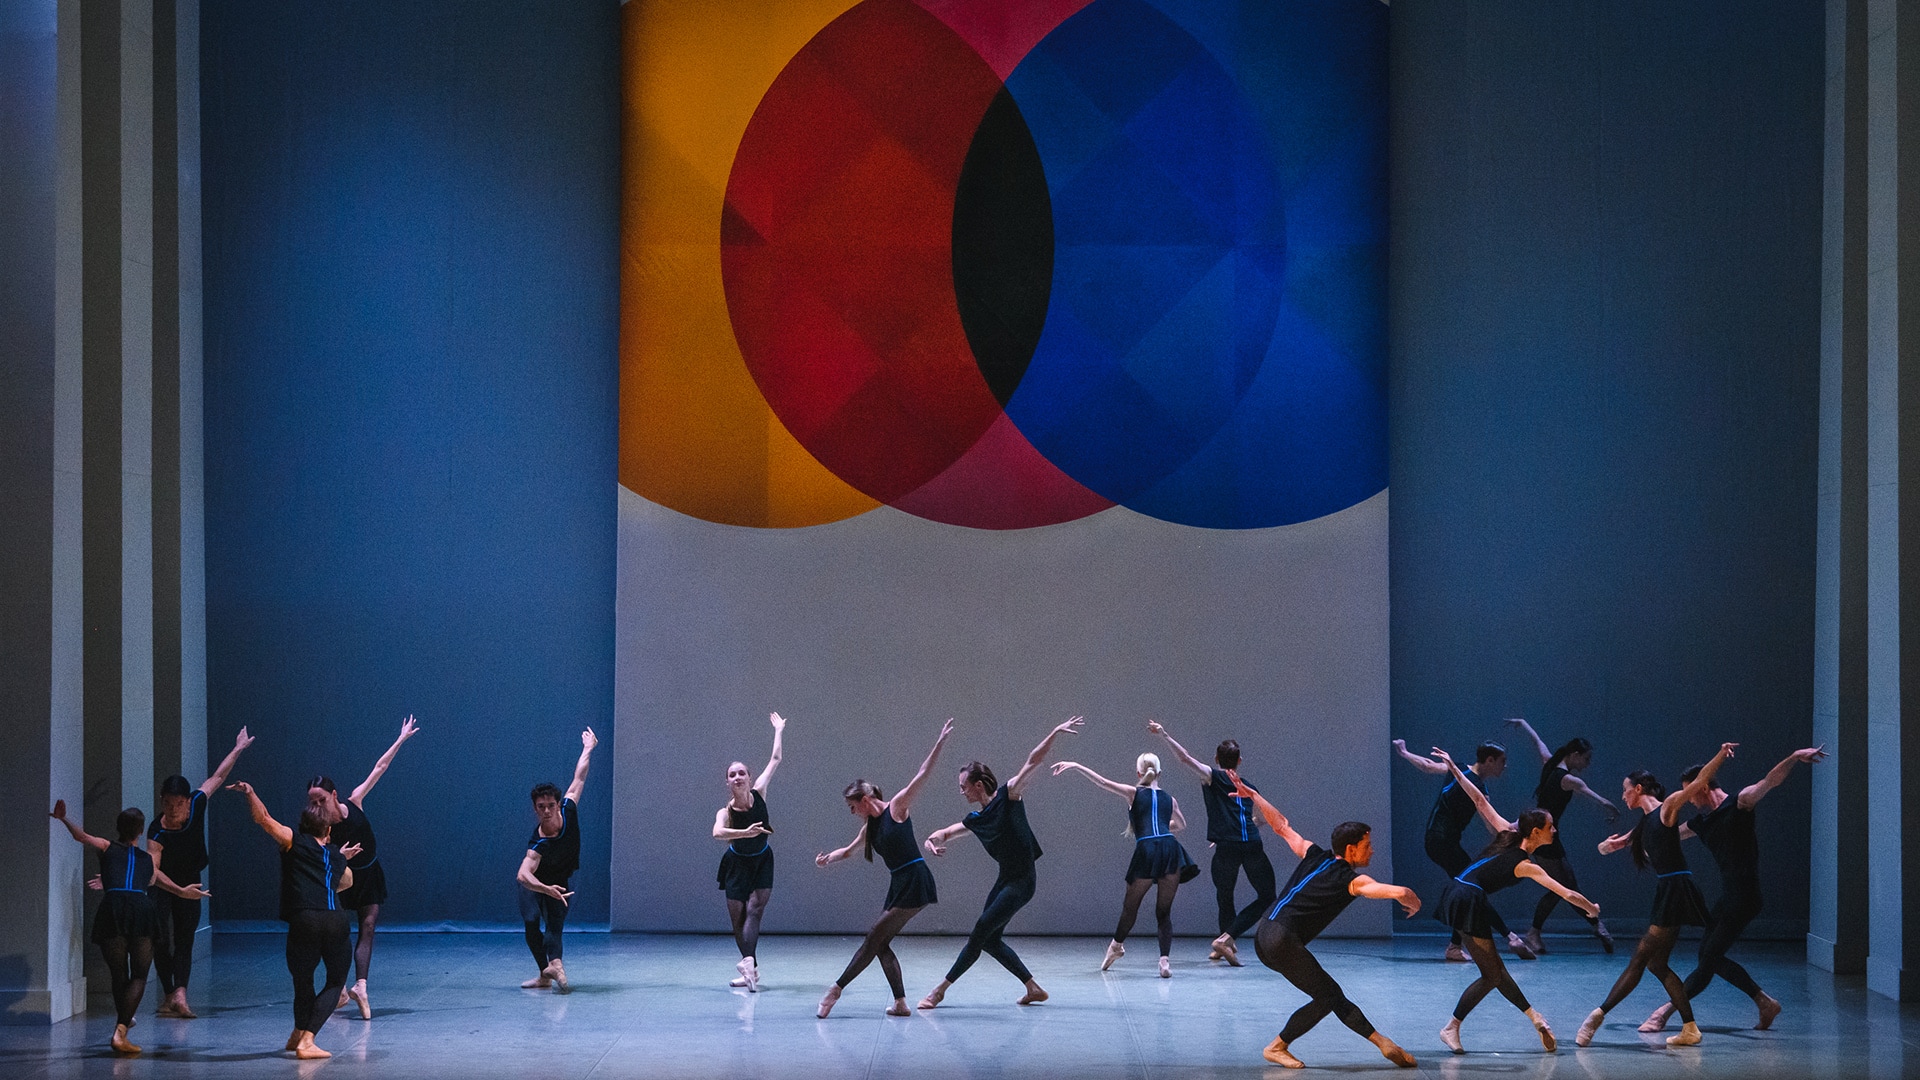 Пермский балет показал премьеру в тёмных тонах и стремительных темпах. Фото - Андрей Чунтомов